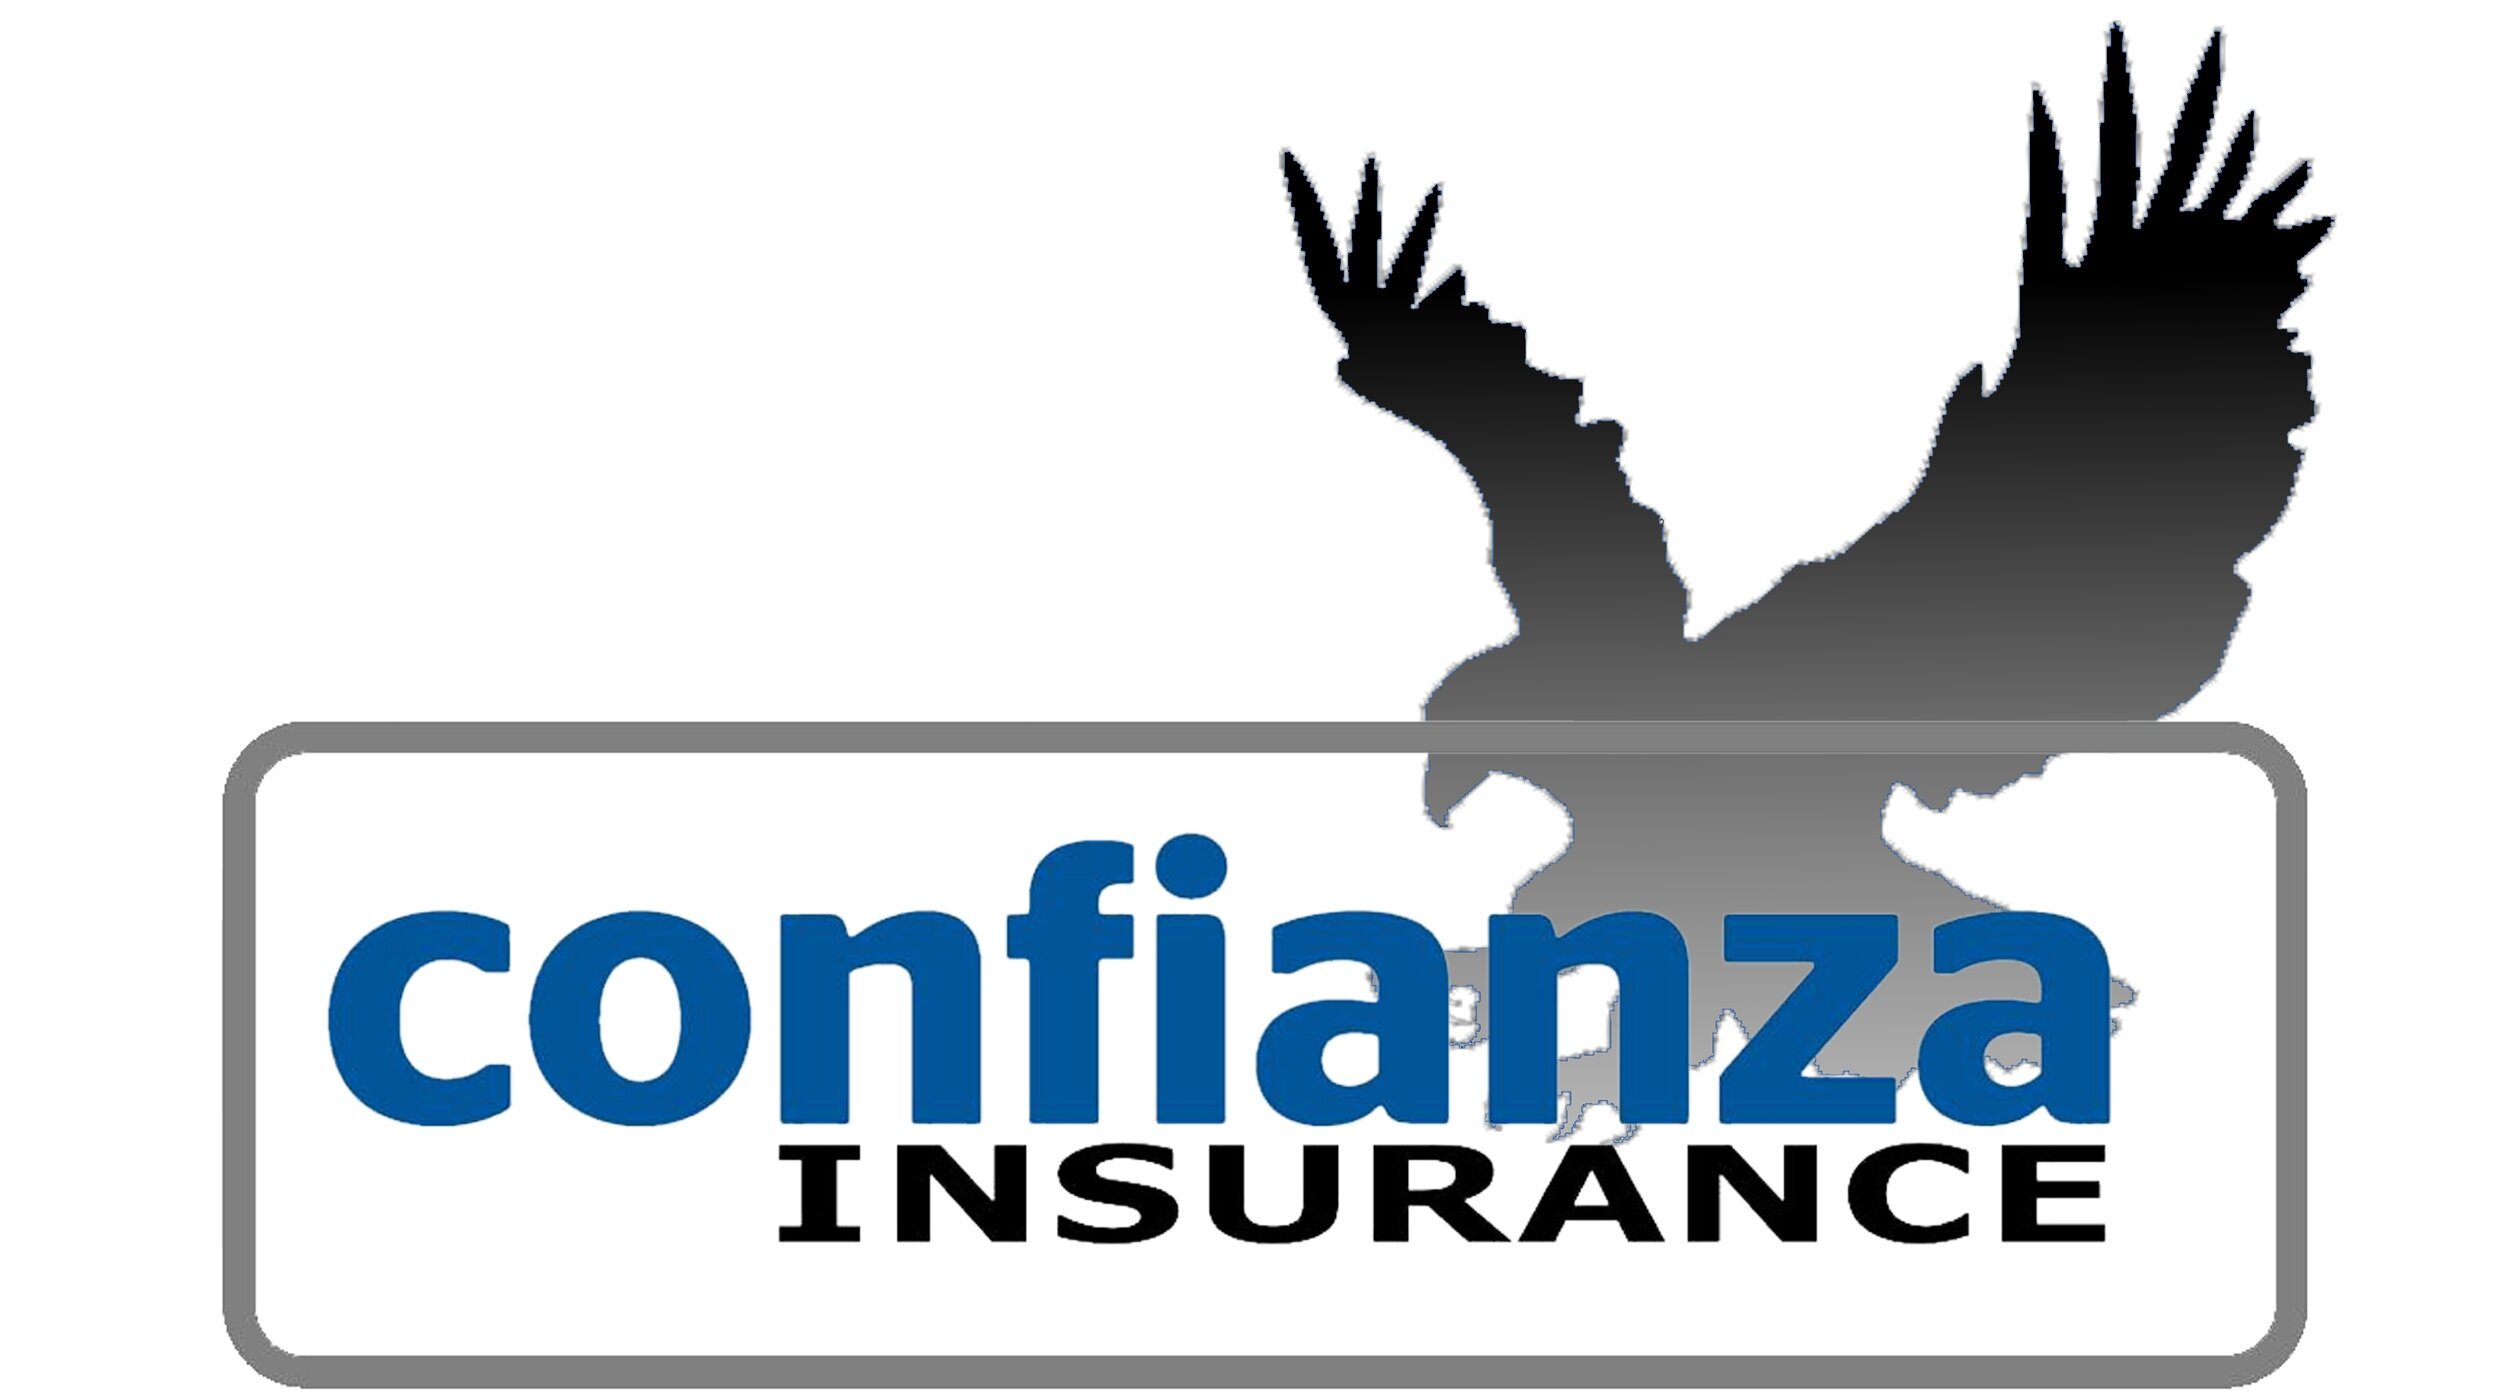 Confianza Insurance Logo bar.jpg